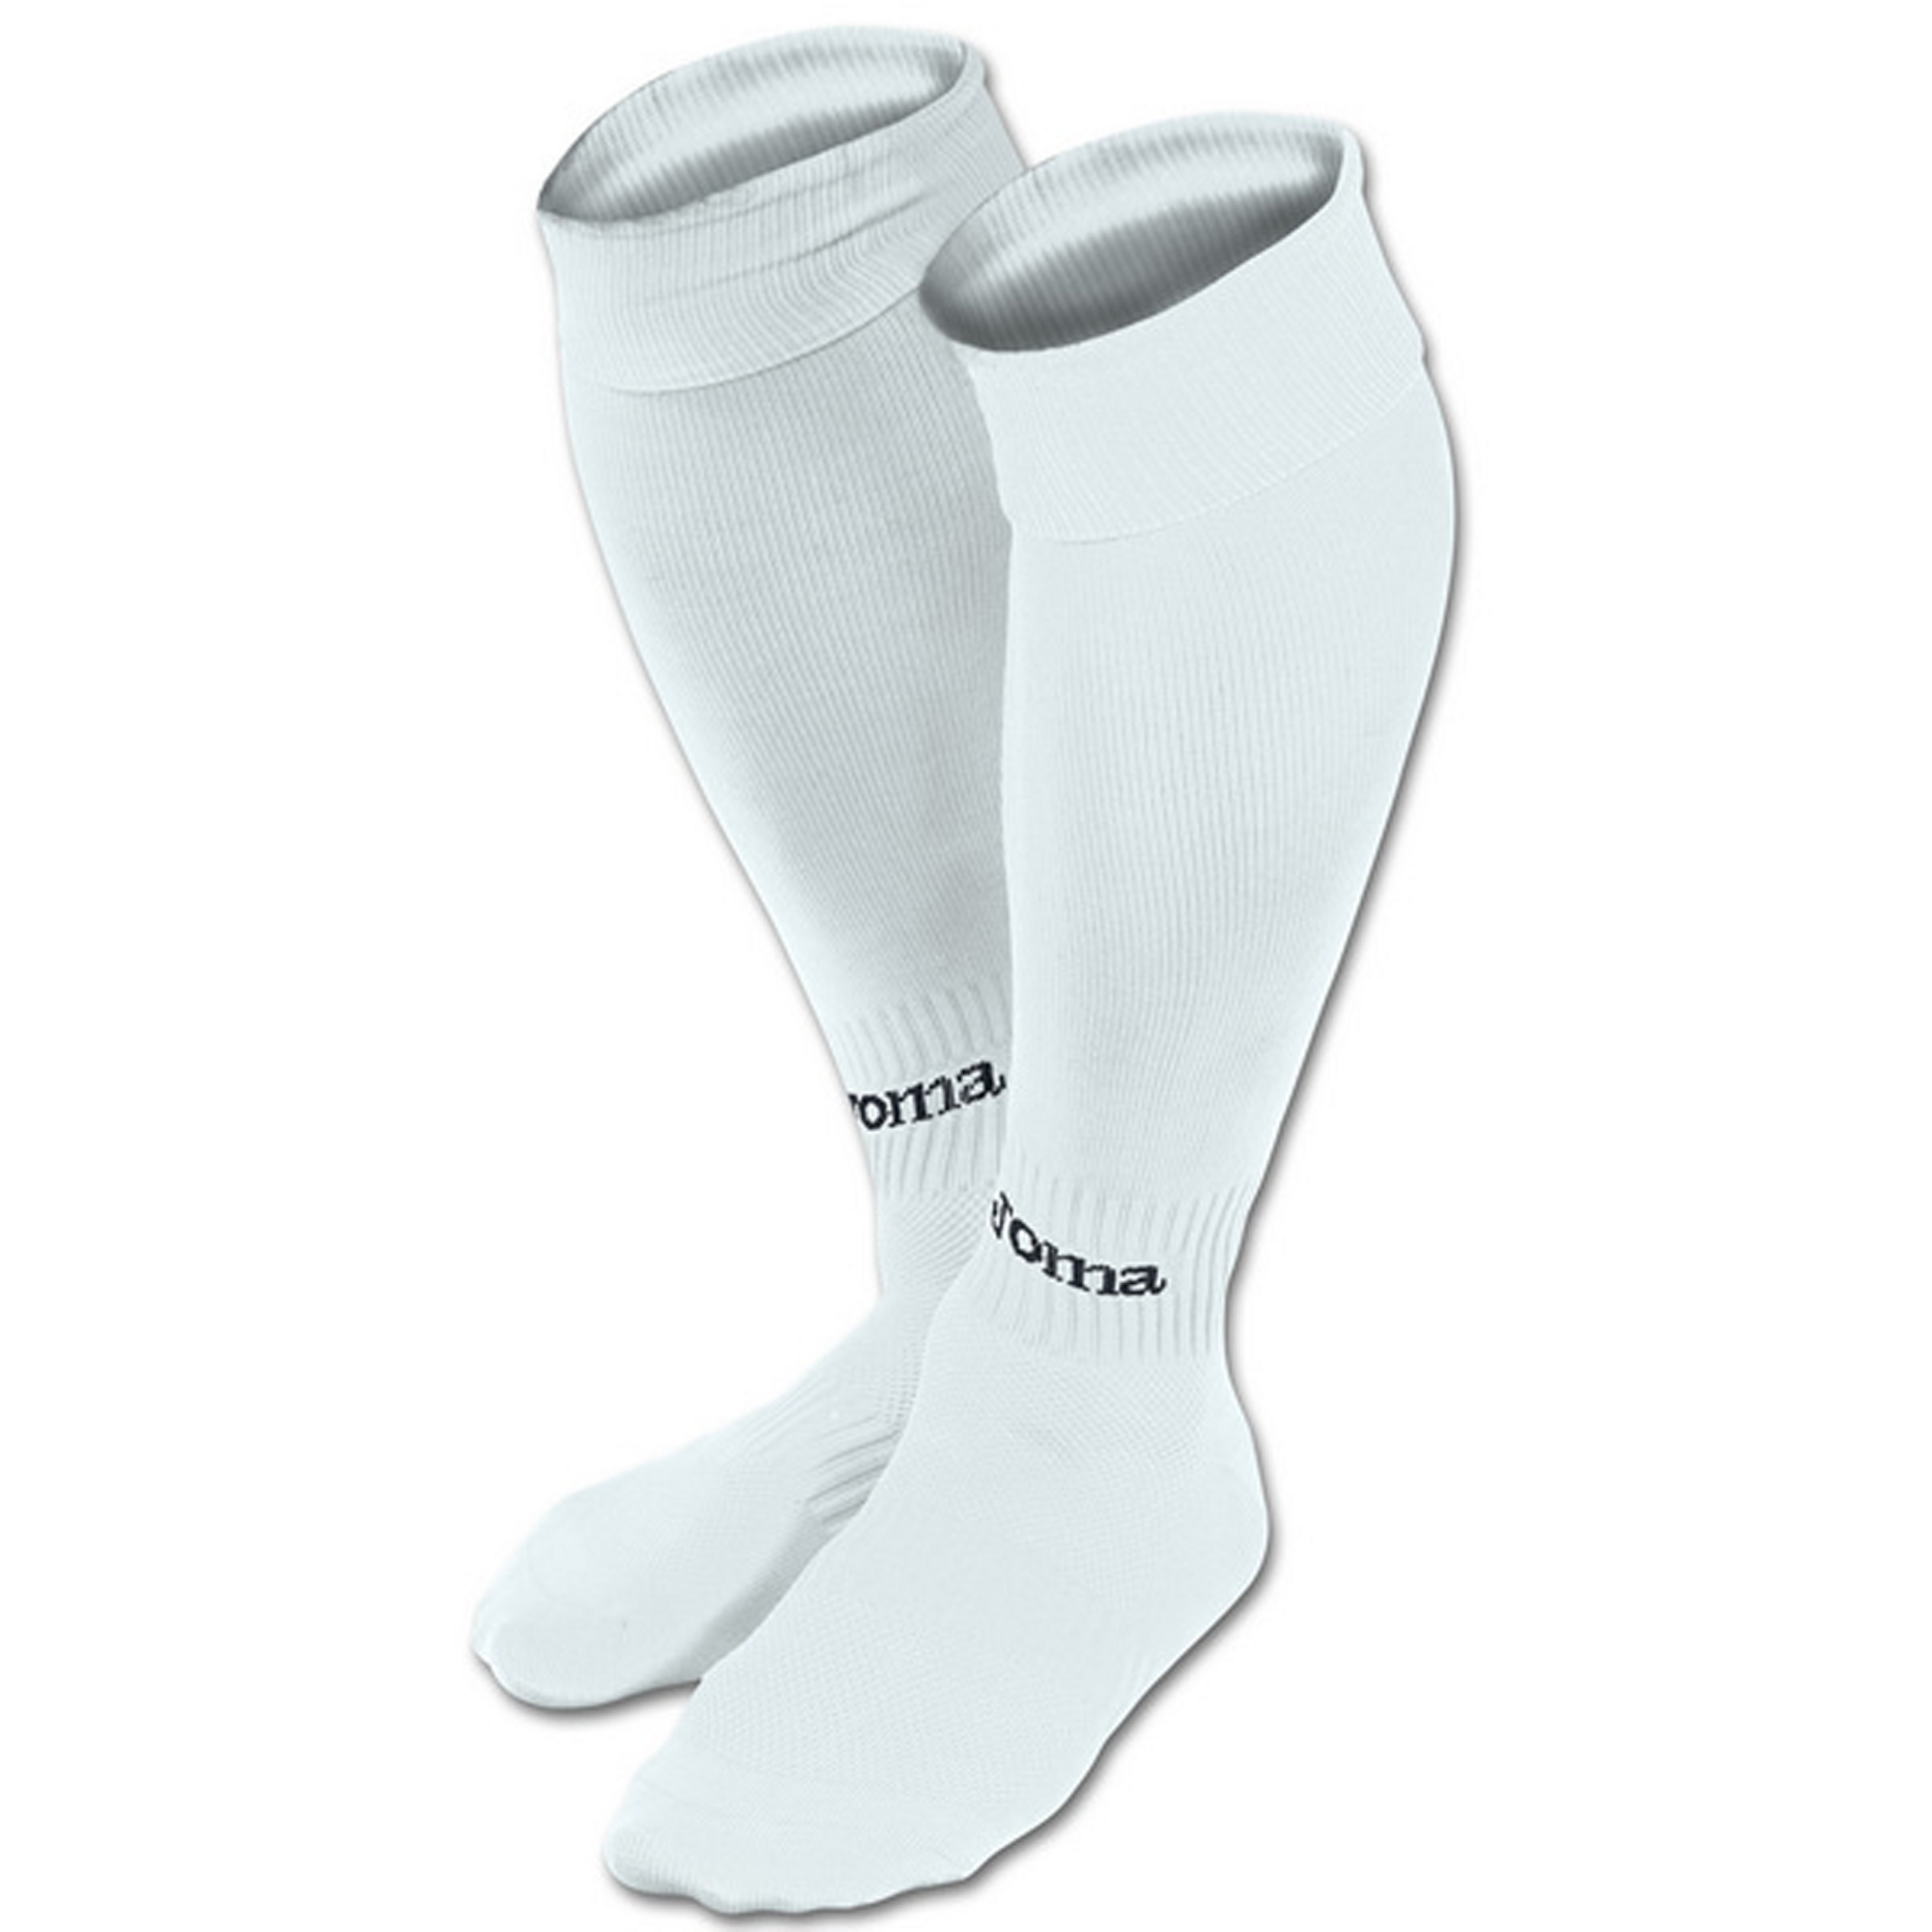 Joma Classic Socks Large 6-11 Vat White